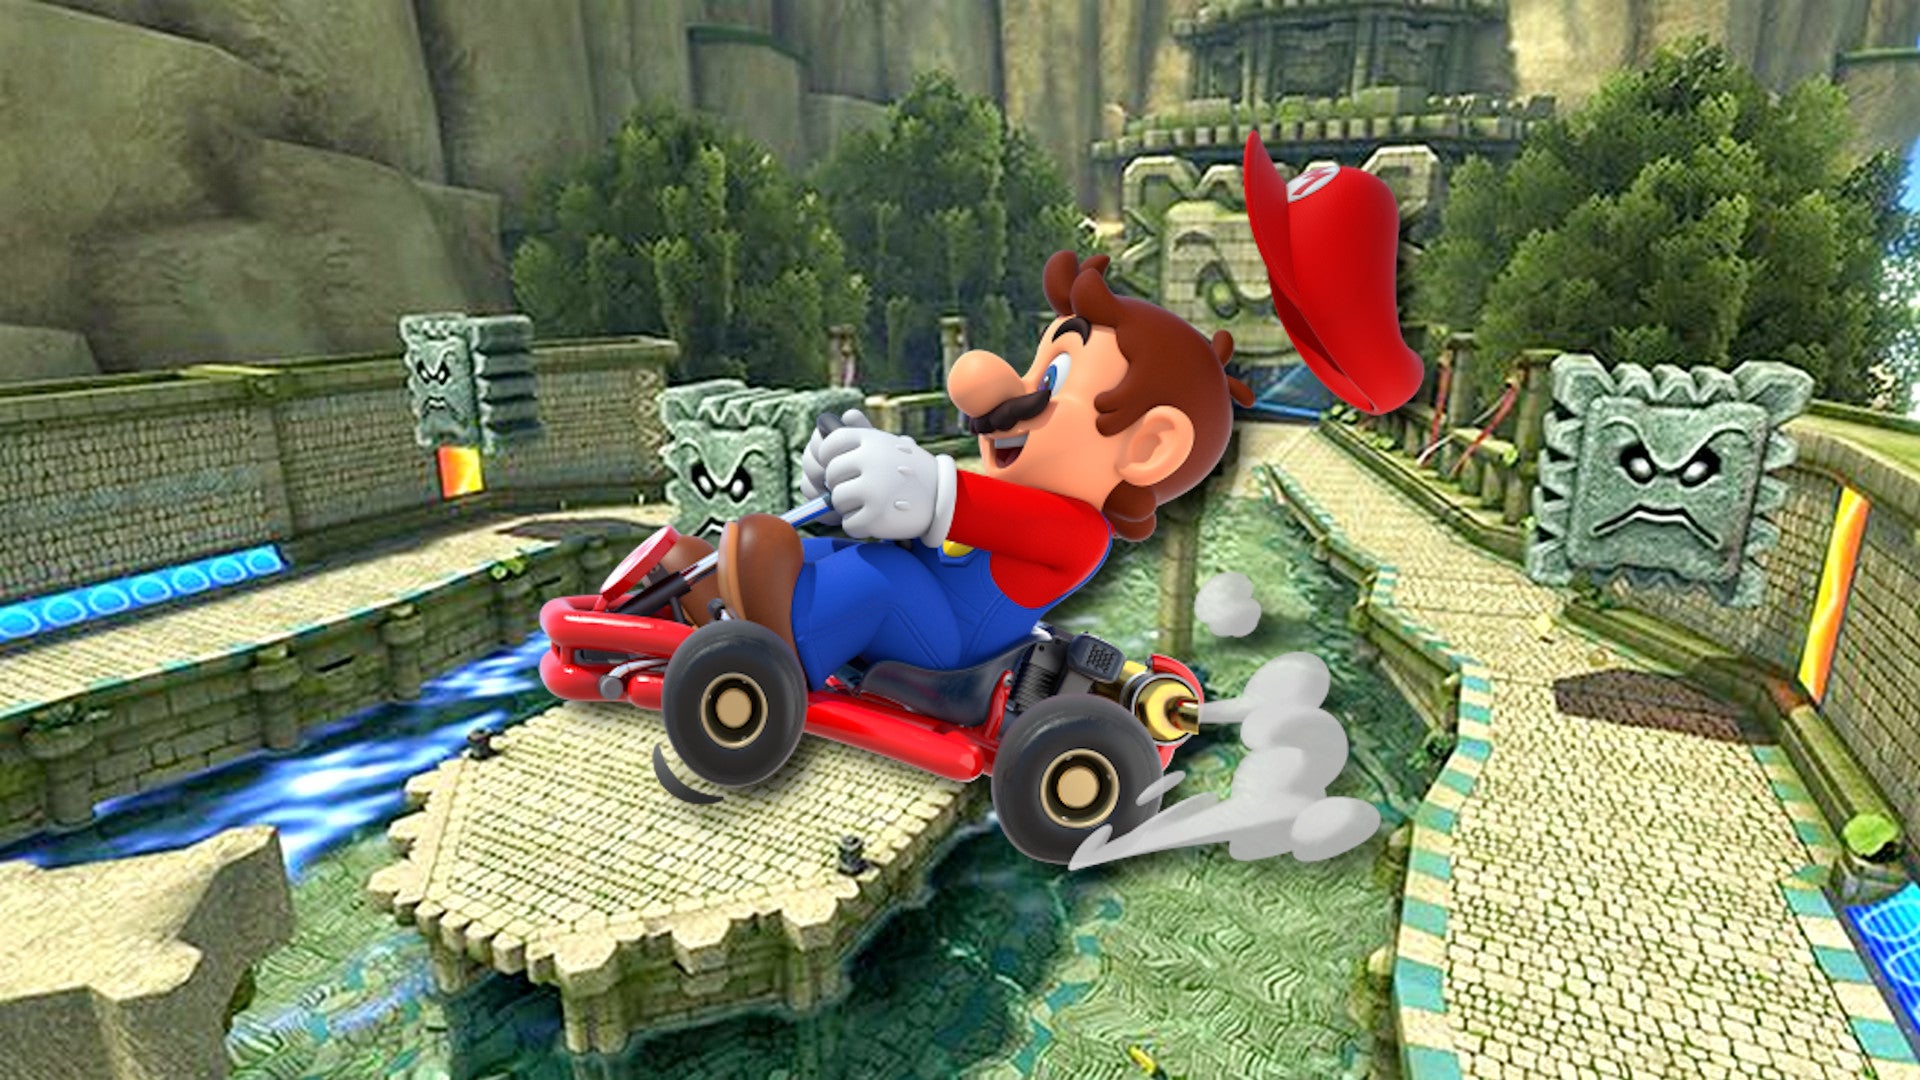 Bilder zu Mario Kart 8 Deluxe: Zweiter Strecken-DLC kommt nächste Woche!